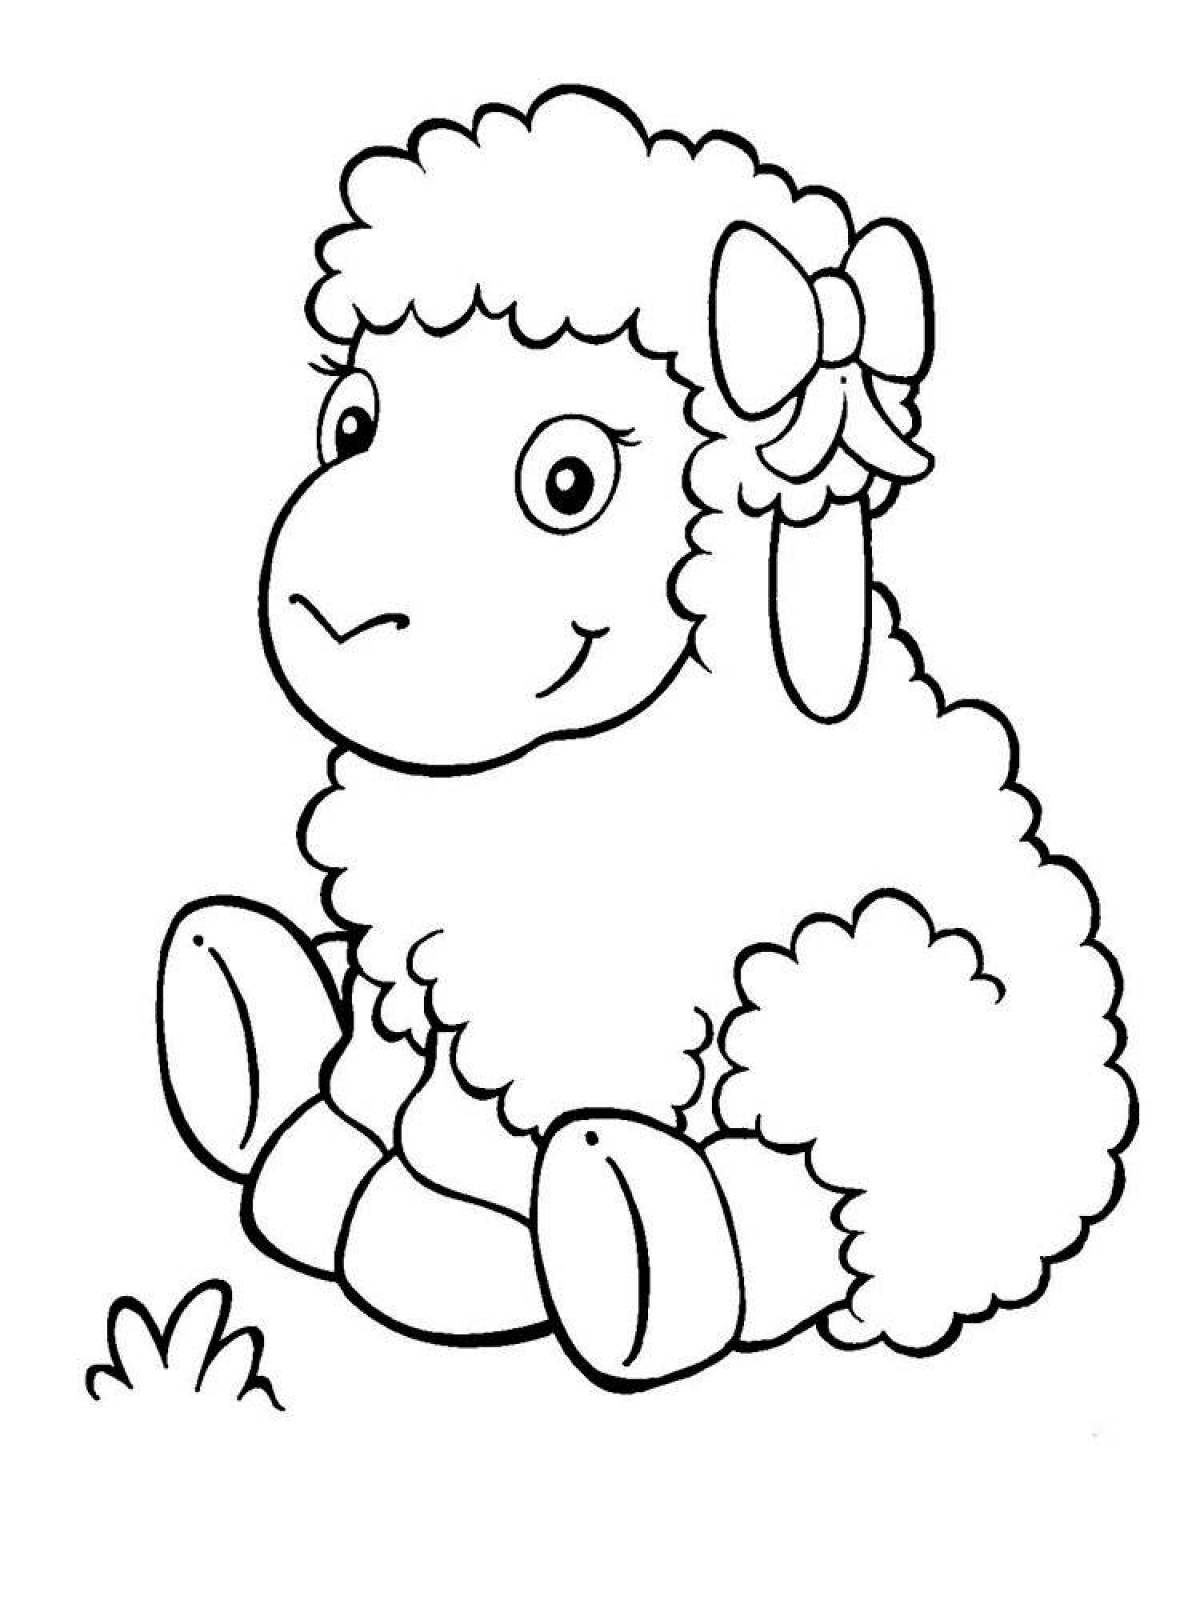 Violent sheep coloring for kids